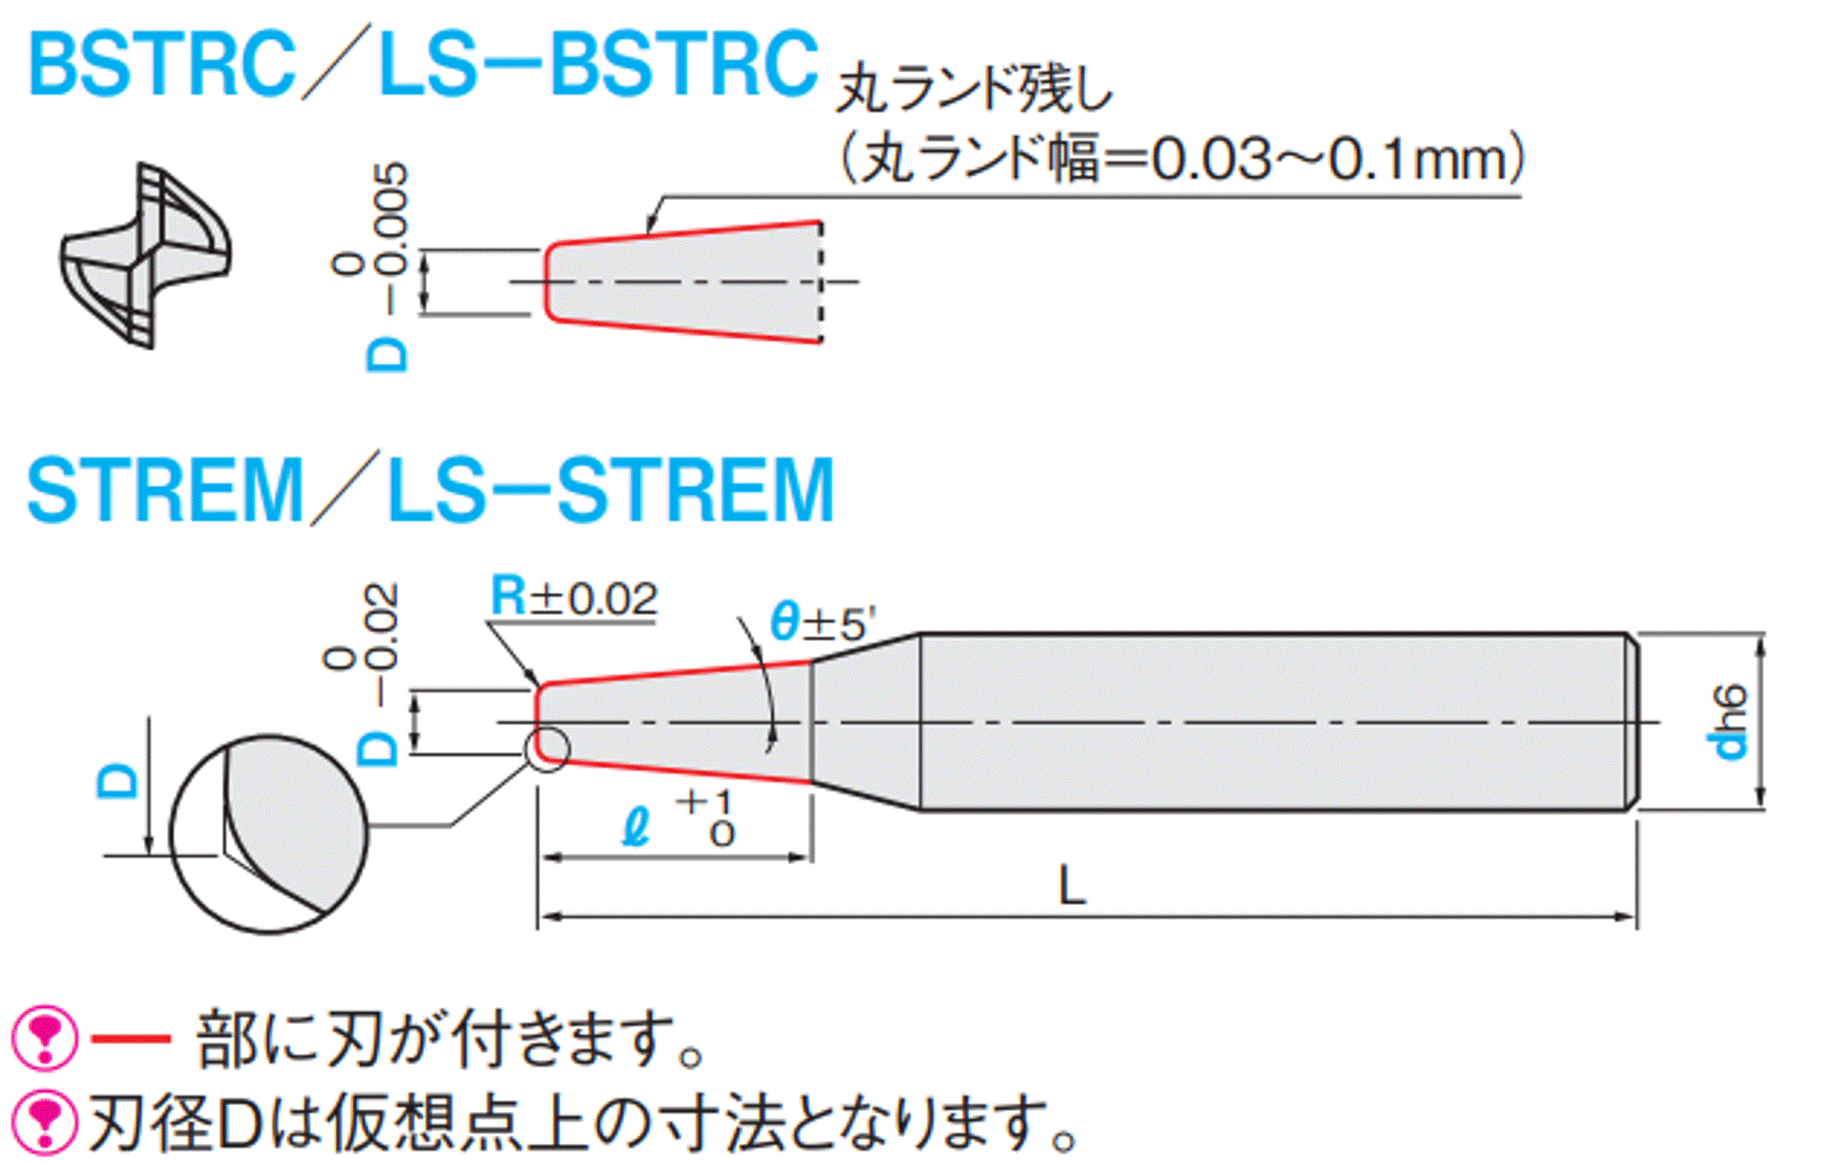 京セラ:京セラ ラジアスエンドミル 4MFR 刃径16mm 刃長35mm 全長110mm シャンク径16mm 4MFR160-350-R20 型式:4MFR160-350-R20 - 2